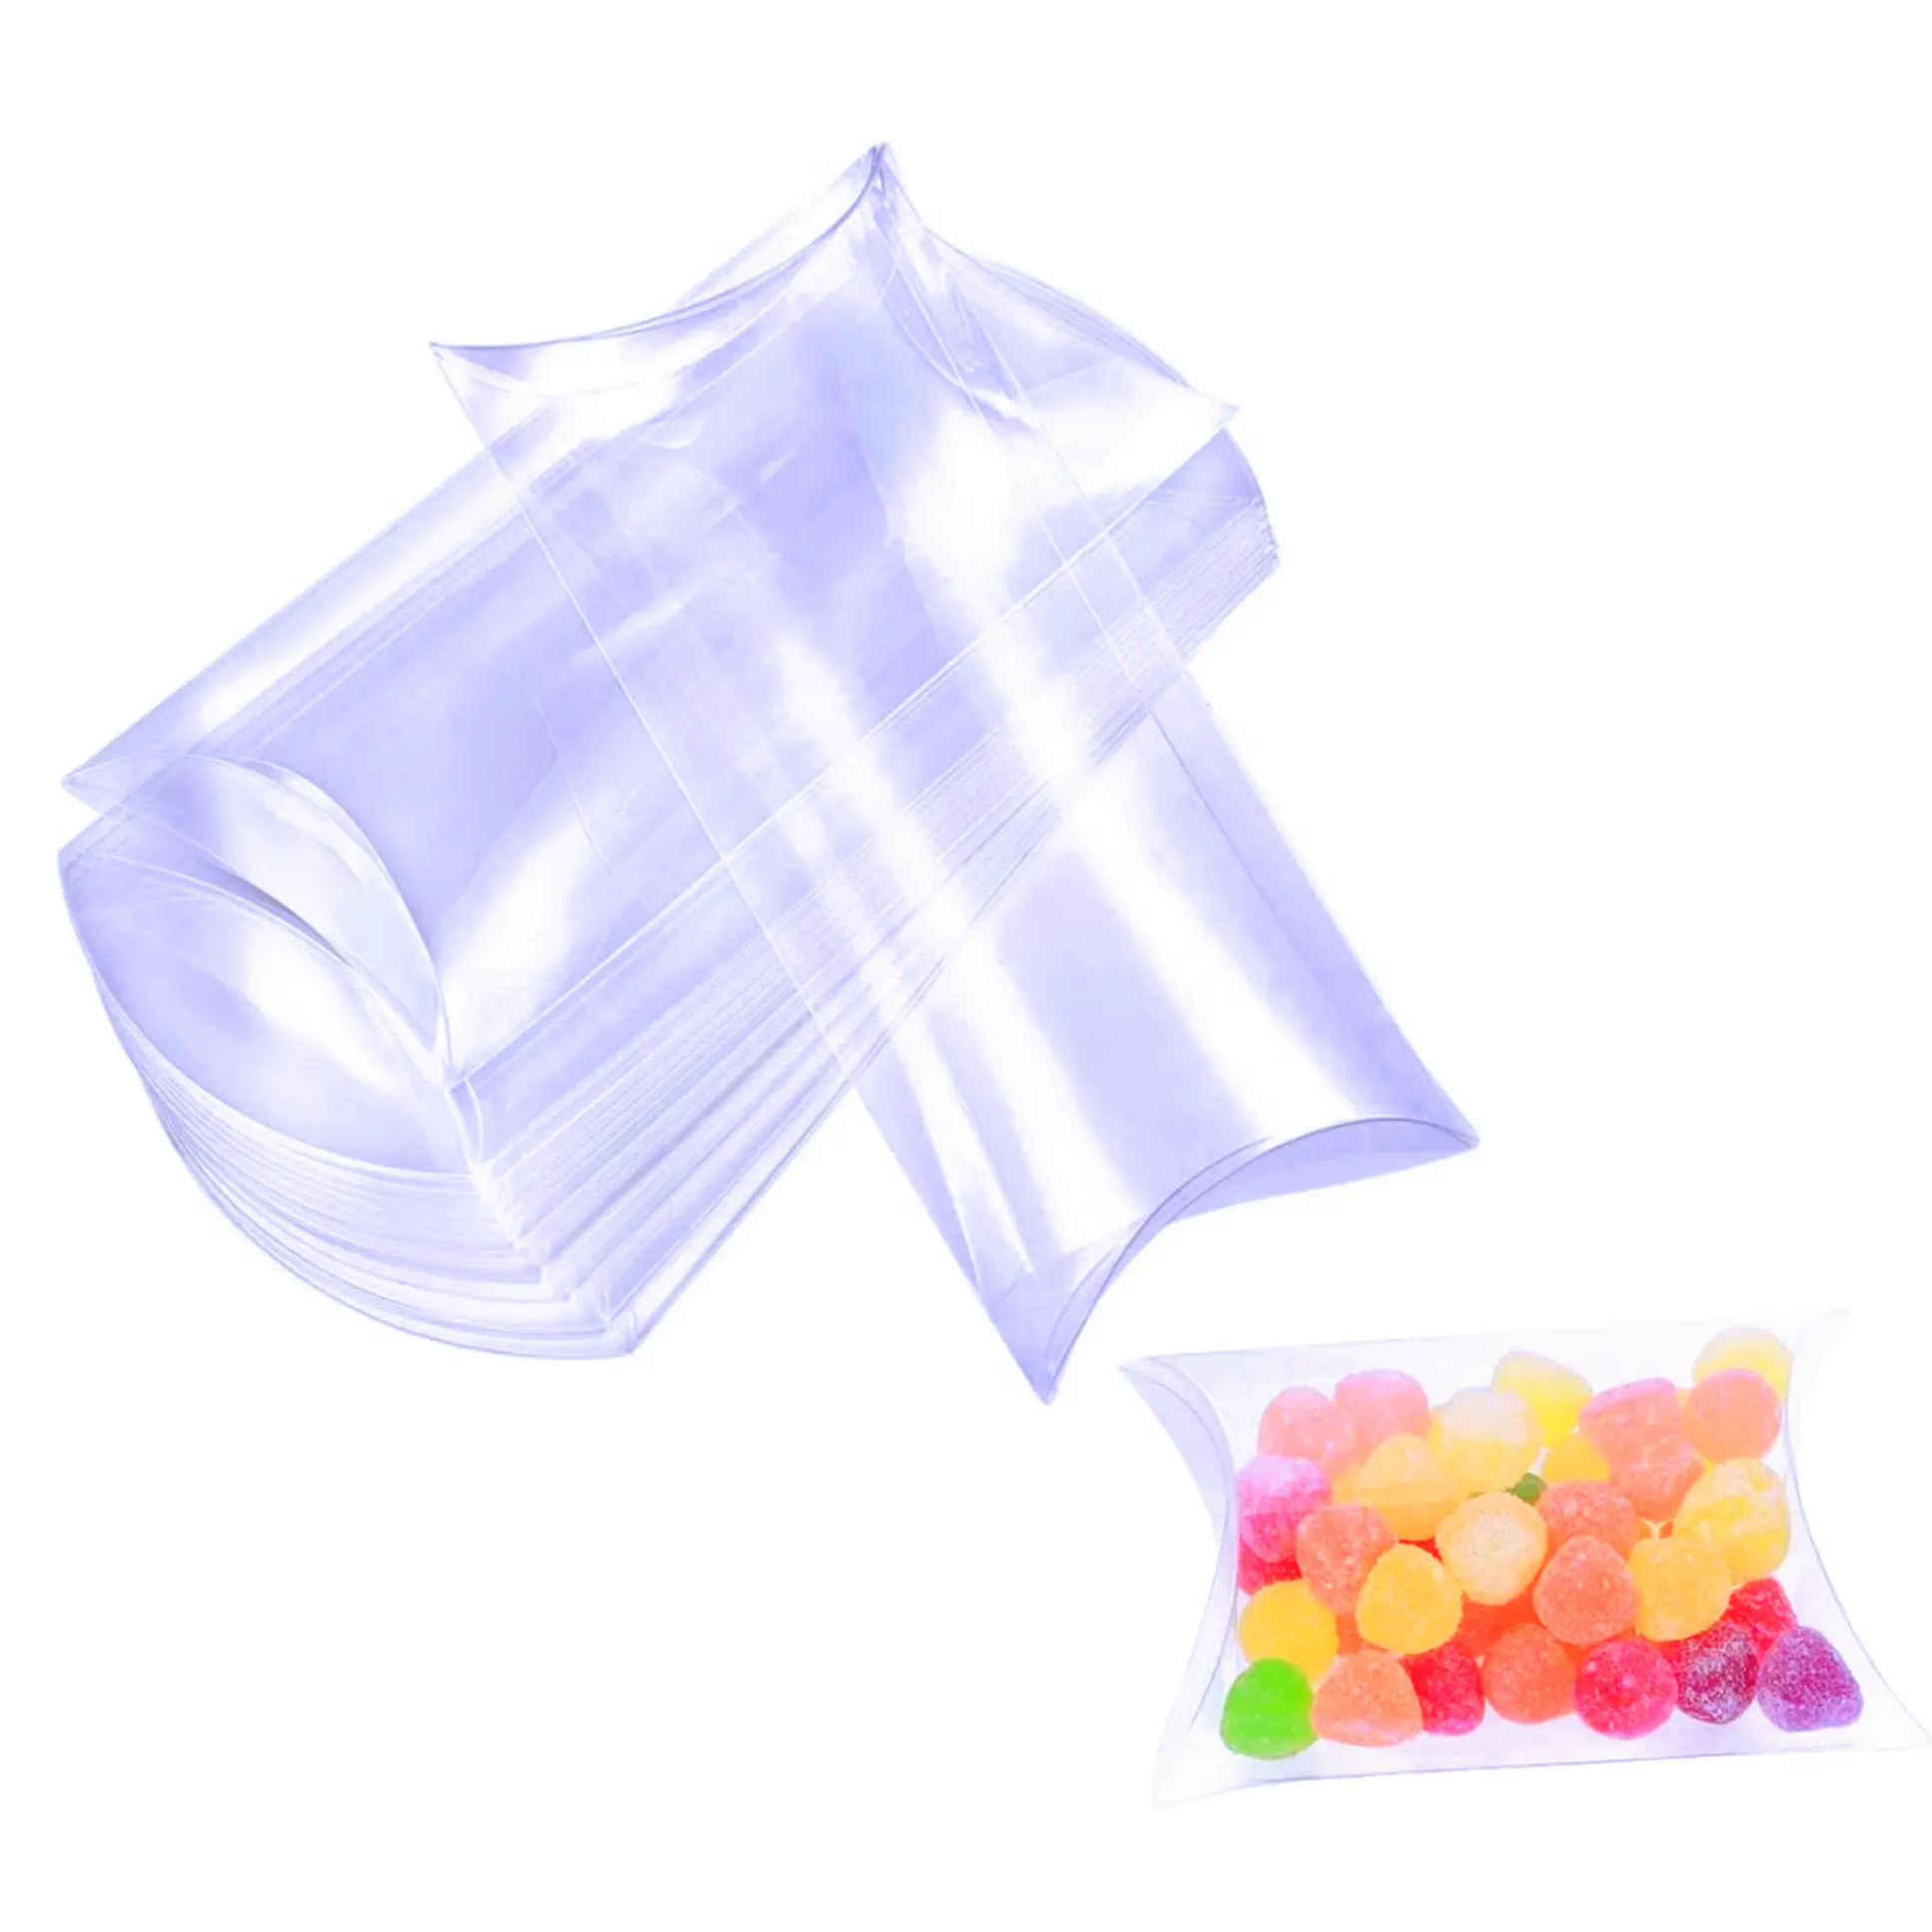 Boîte cadeau d'oreiller en plastique transparent utilisée pour emballer des bonbons, des bijoux, des mini boîtes en plastique